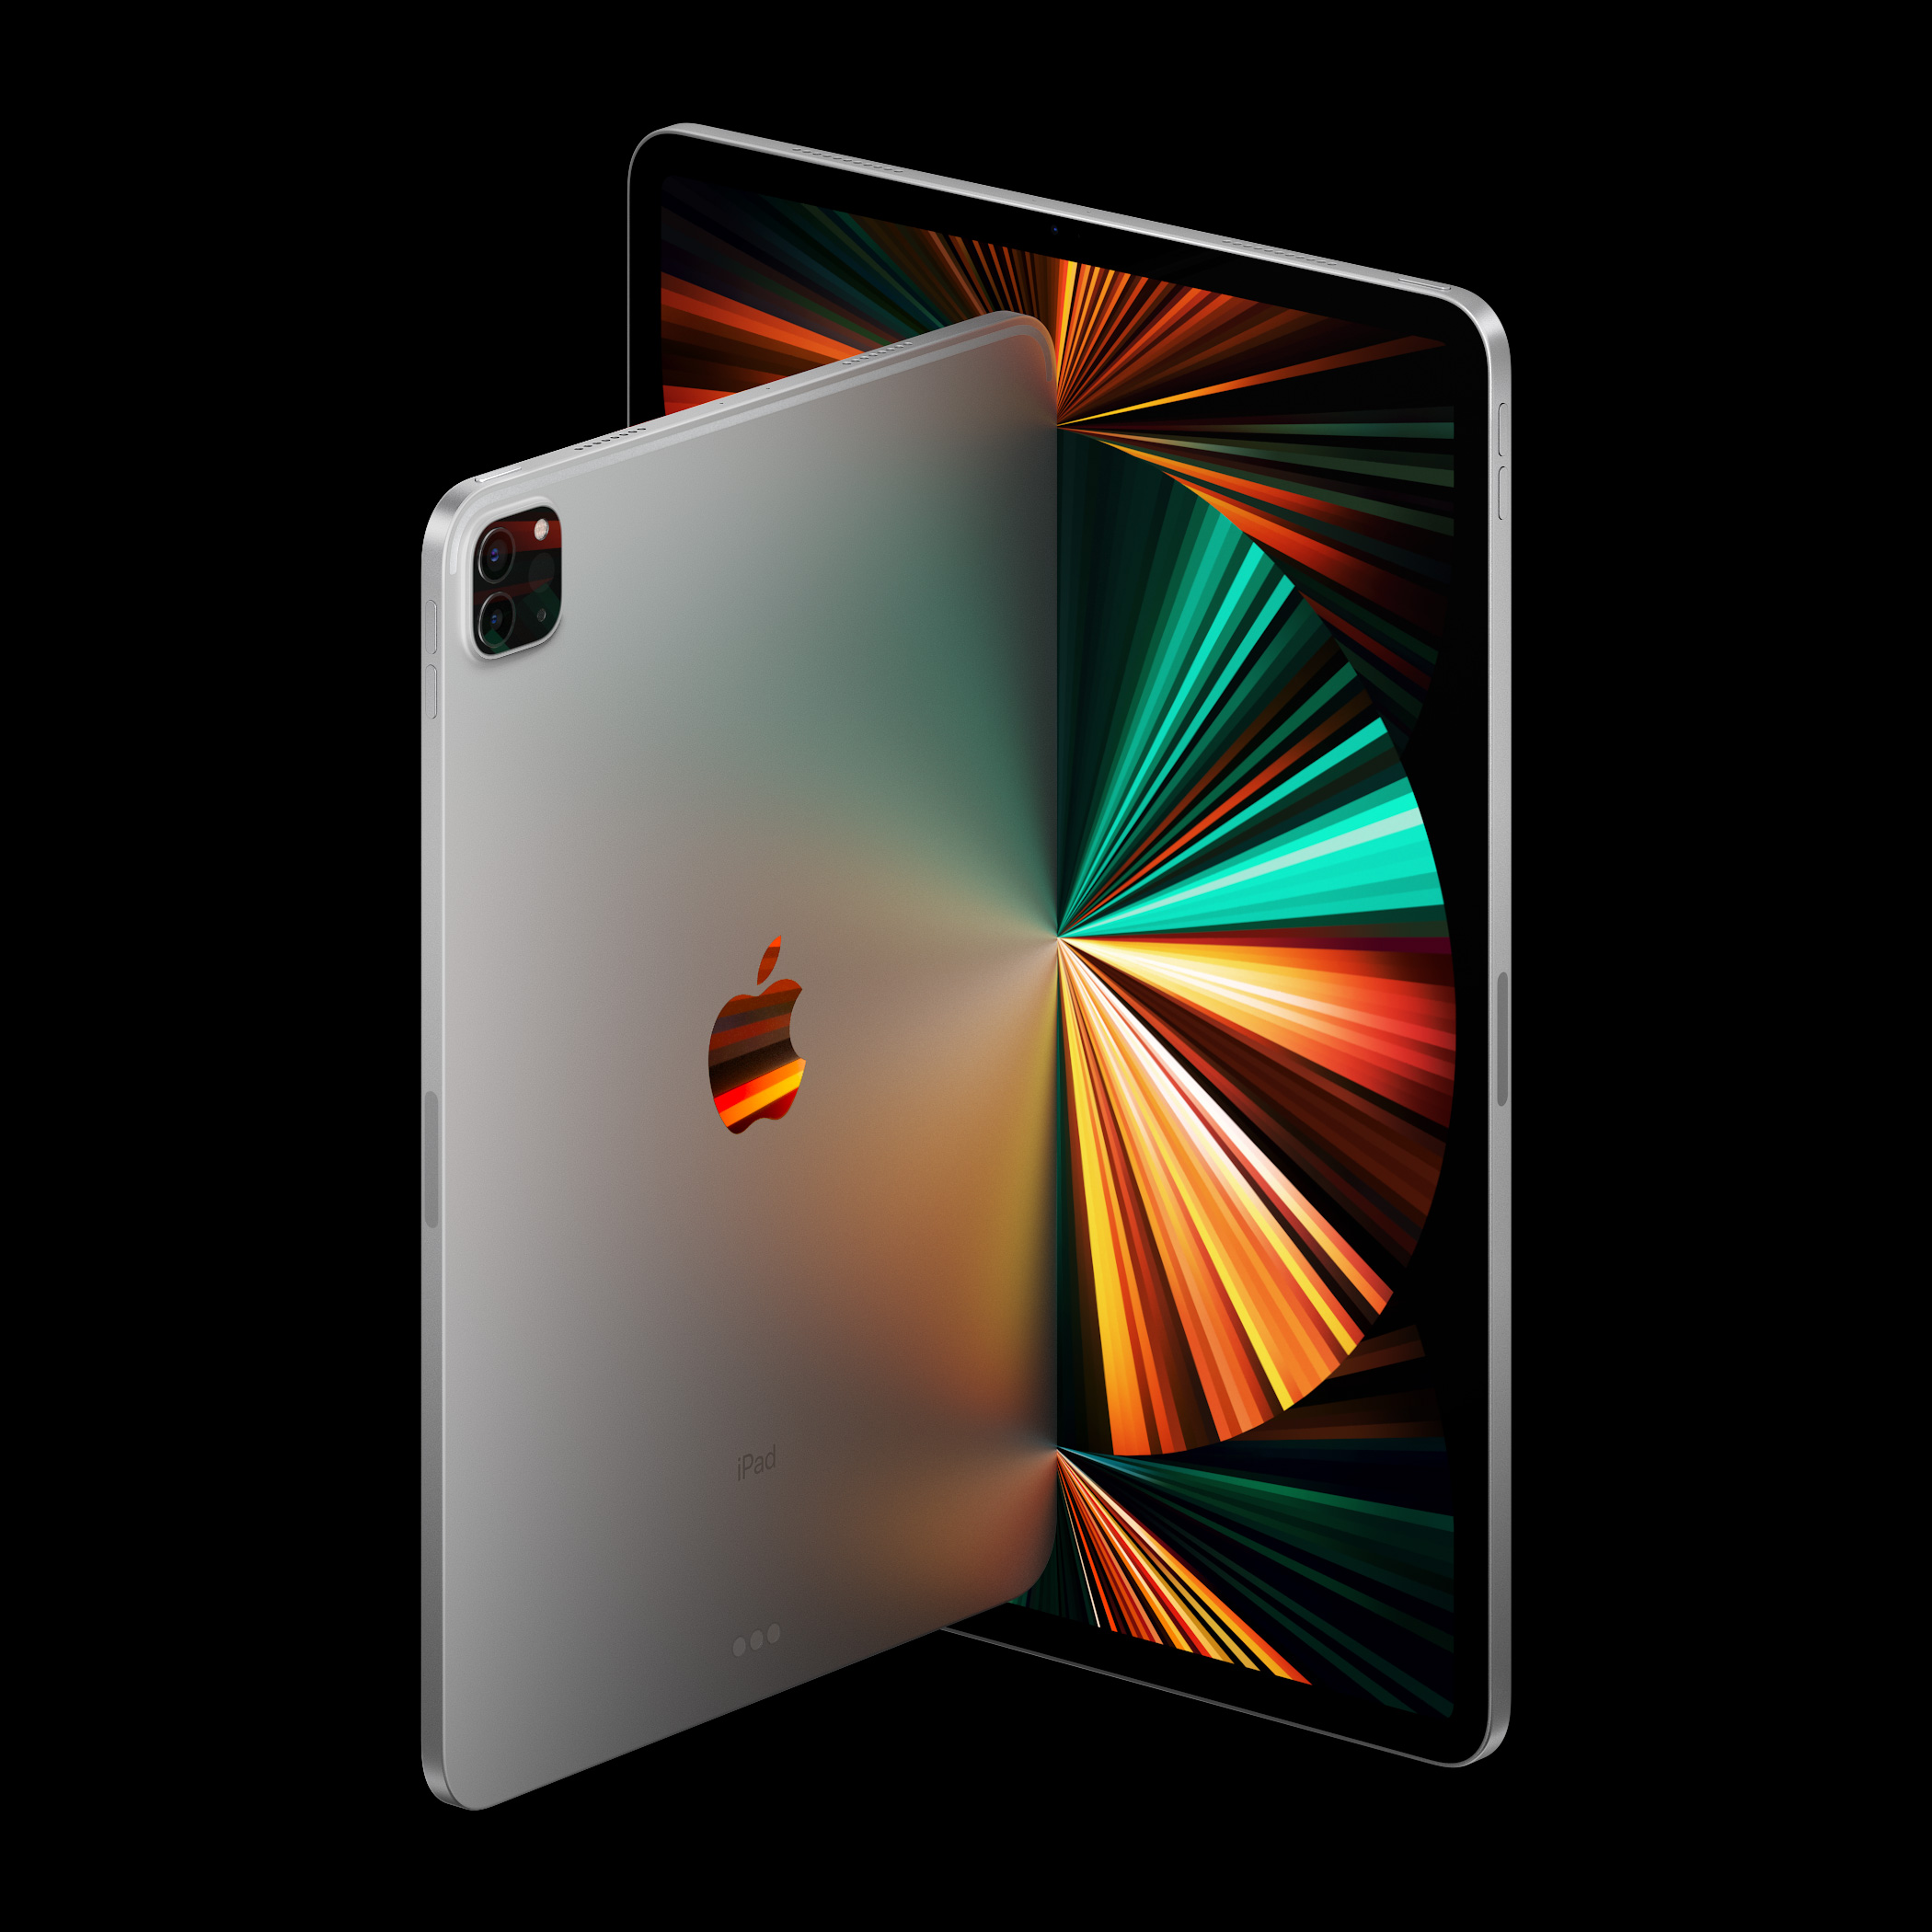 iPad Apple IPAD 10,2'' 64GO ARGENT WIFI 9ème génération 2021 -  MK2L3NF/A